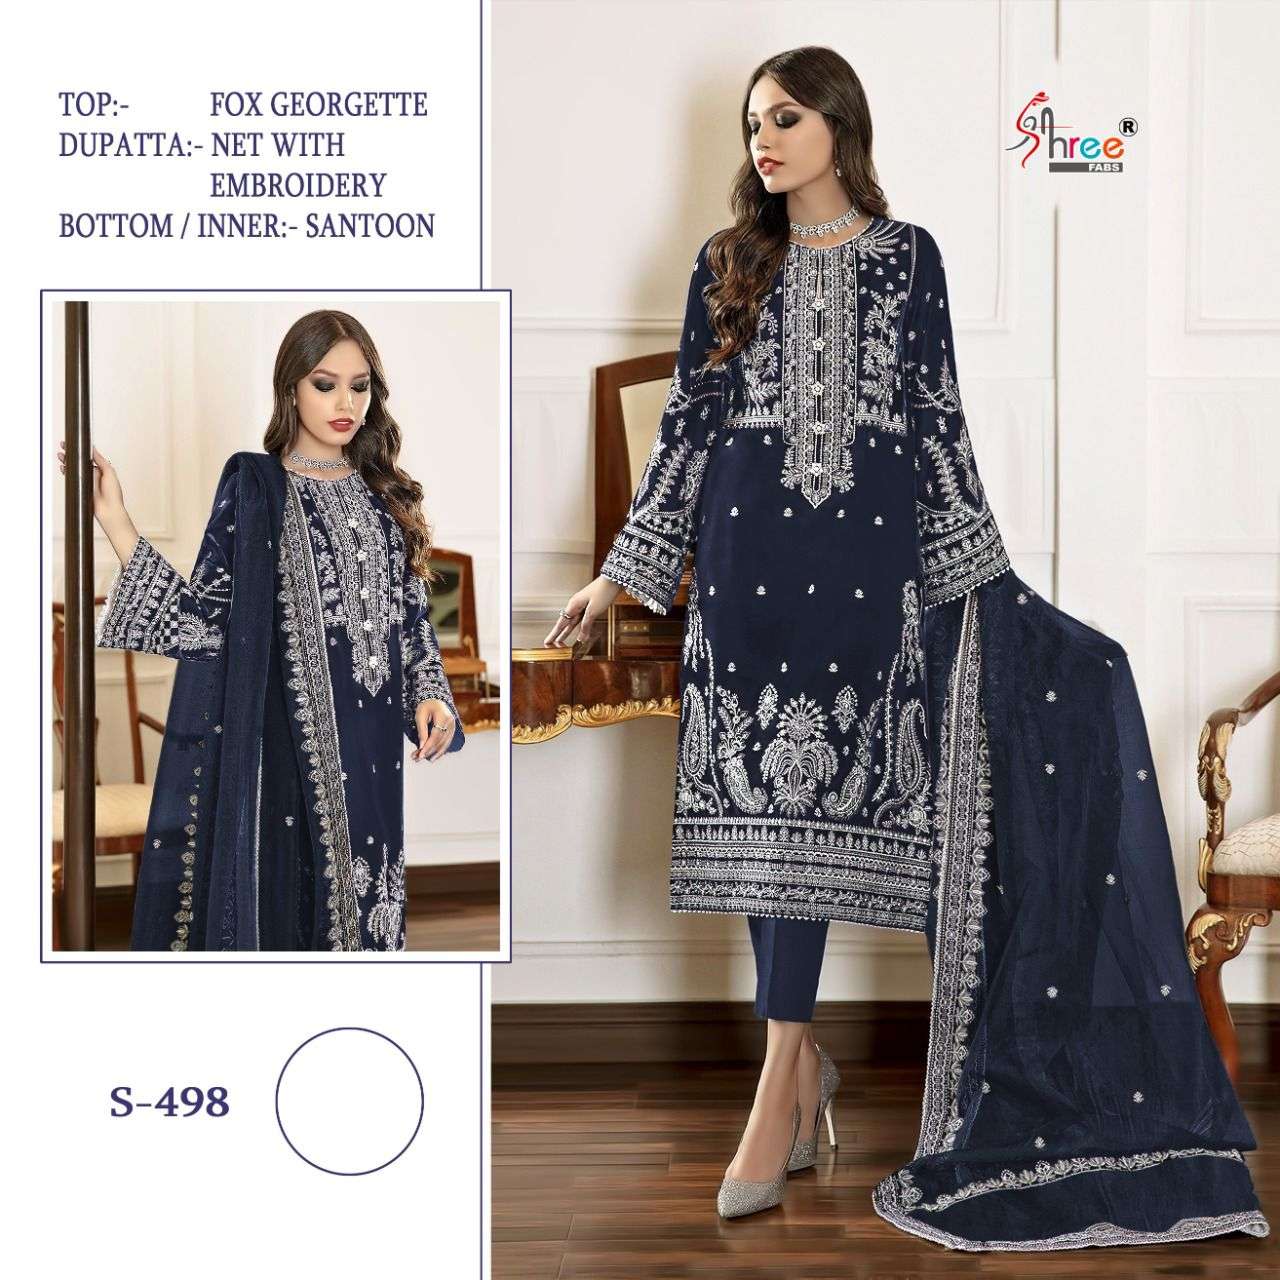 shree fabs 498 colors fancy designer pakistani suits manufacturer surat